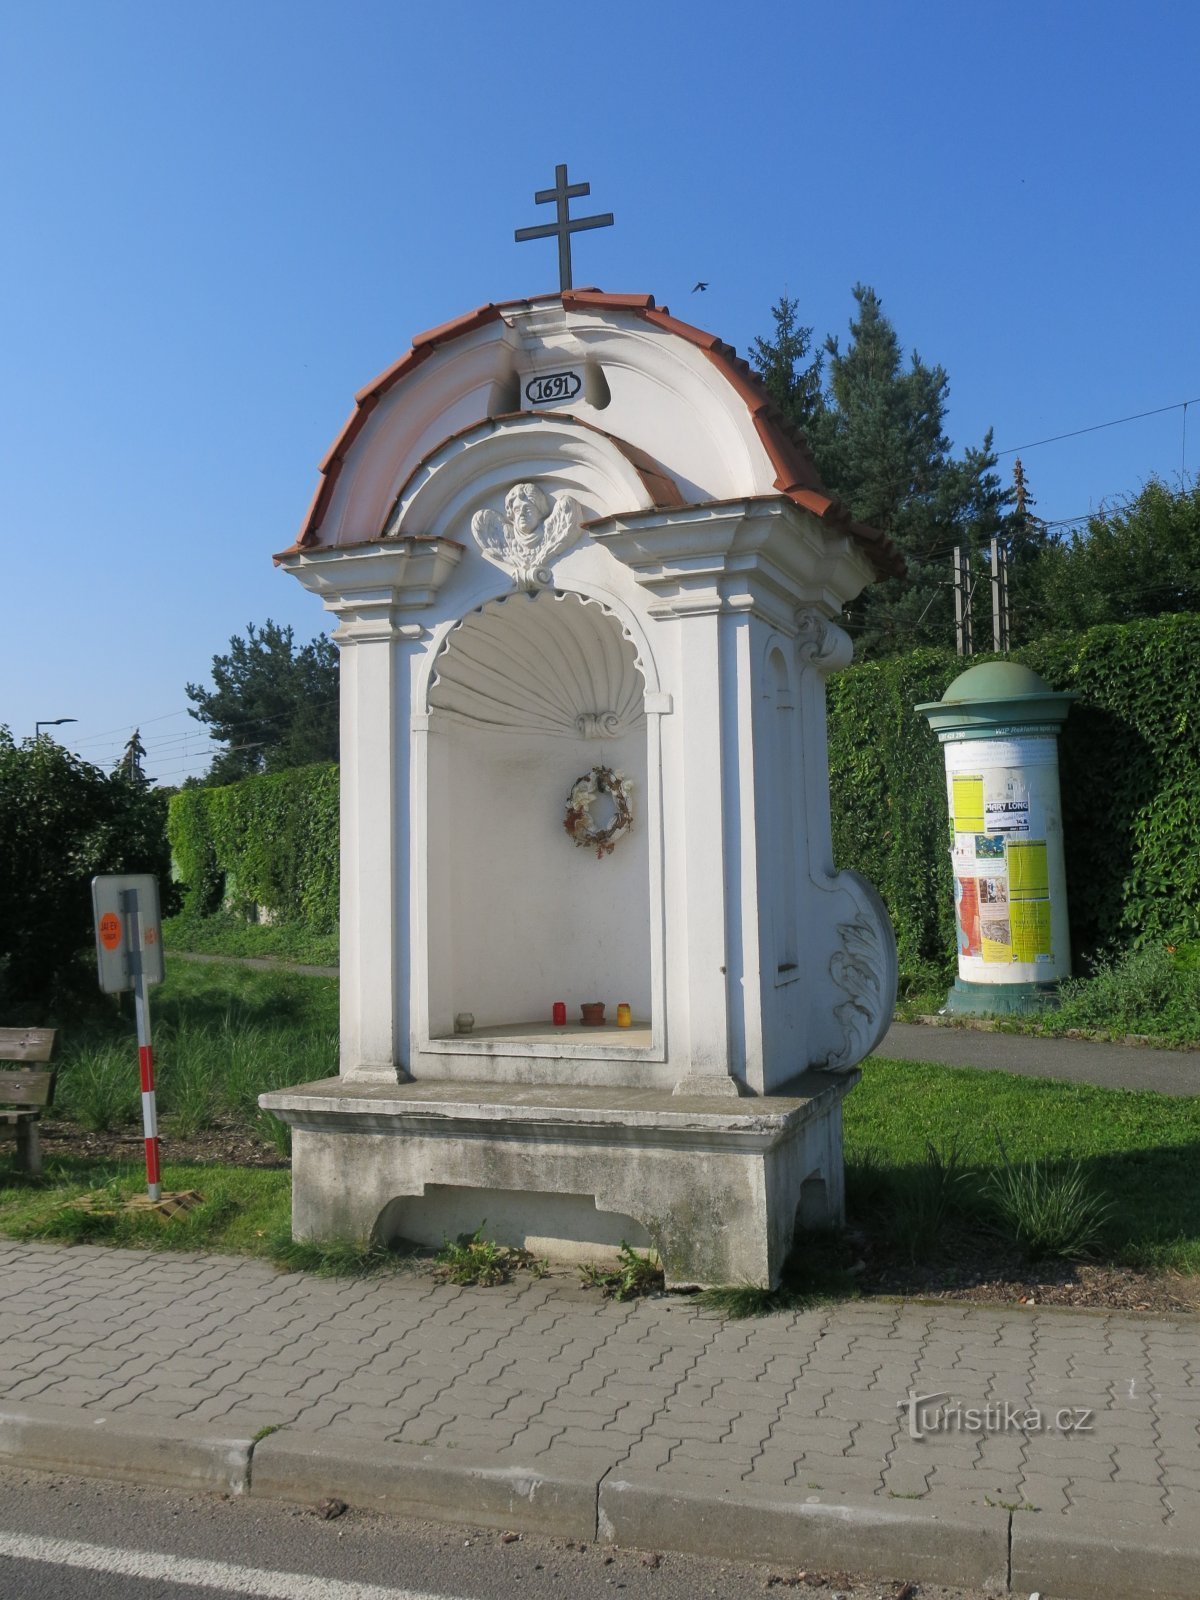 Planá nad Luznicí - capilla de St. Bárbara